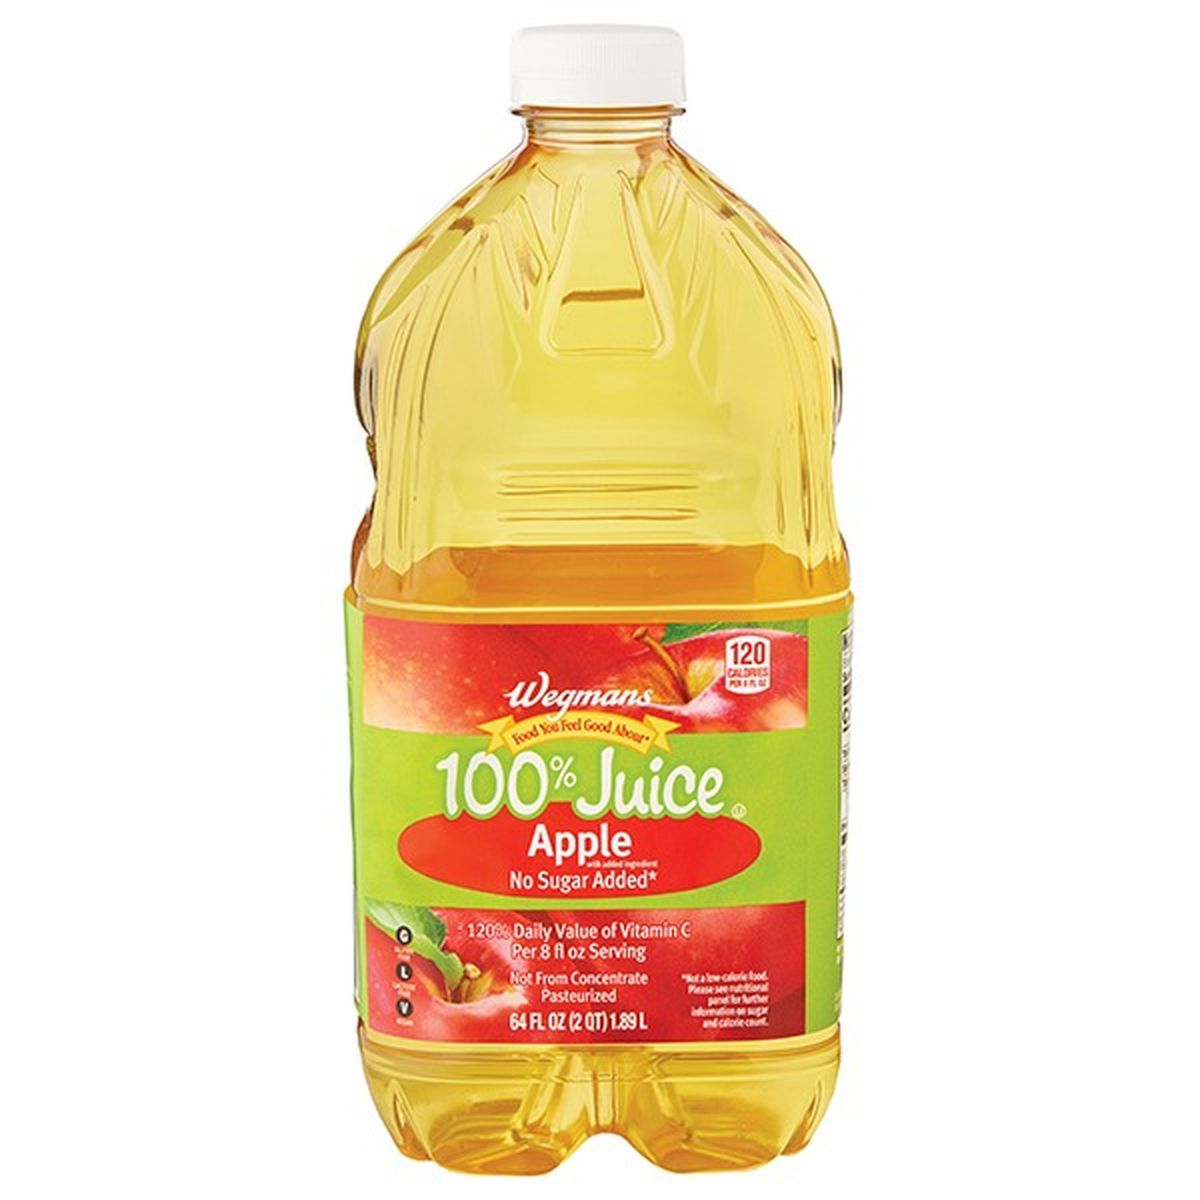 Calories in Wegmans 100% Juice, Apple